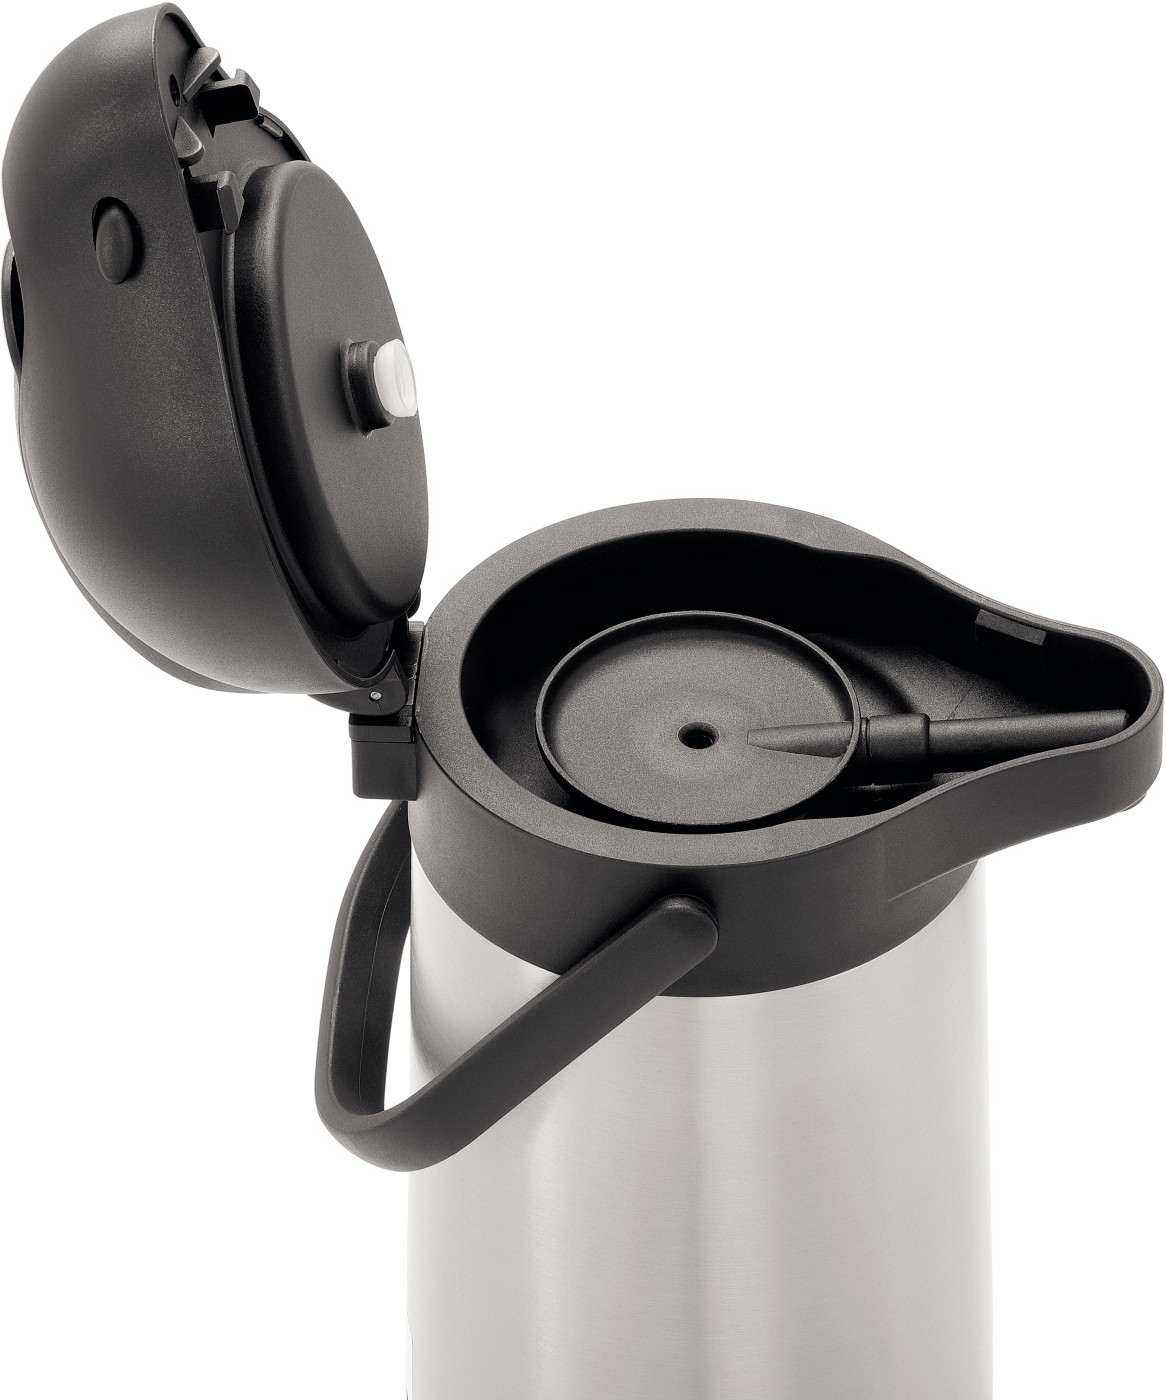  Bartscher Thermo pump jug 1,9L-ST 